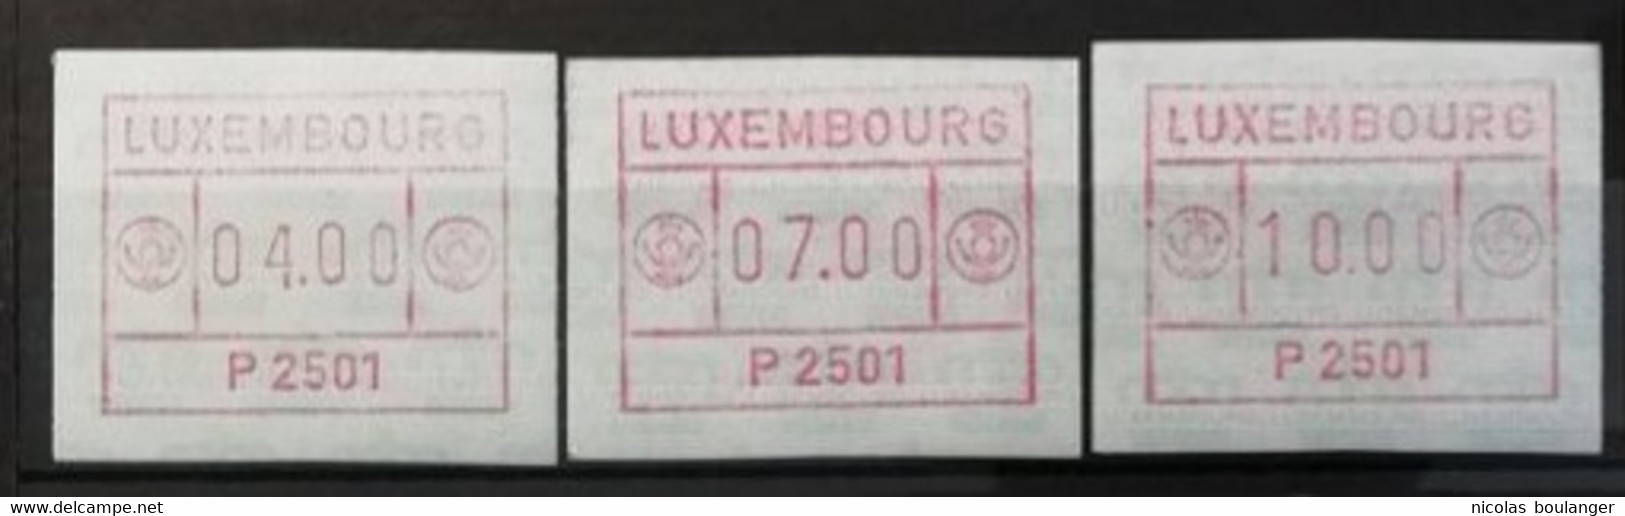 Luxembourg 1983 / Yvert Distributeurs (3 Valeurs) - Vignettes D'affranchissement